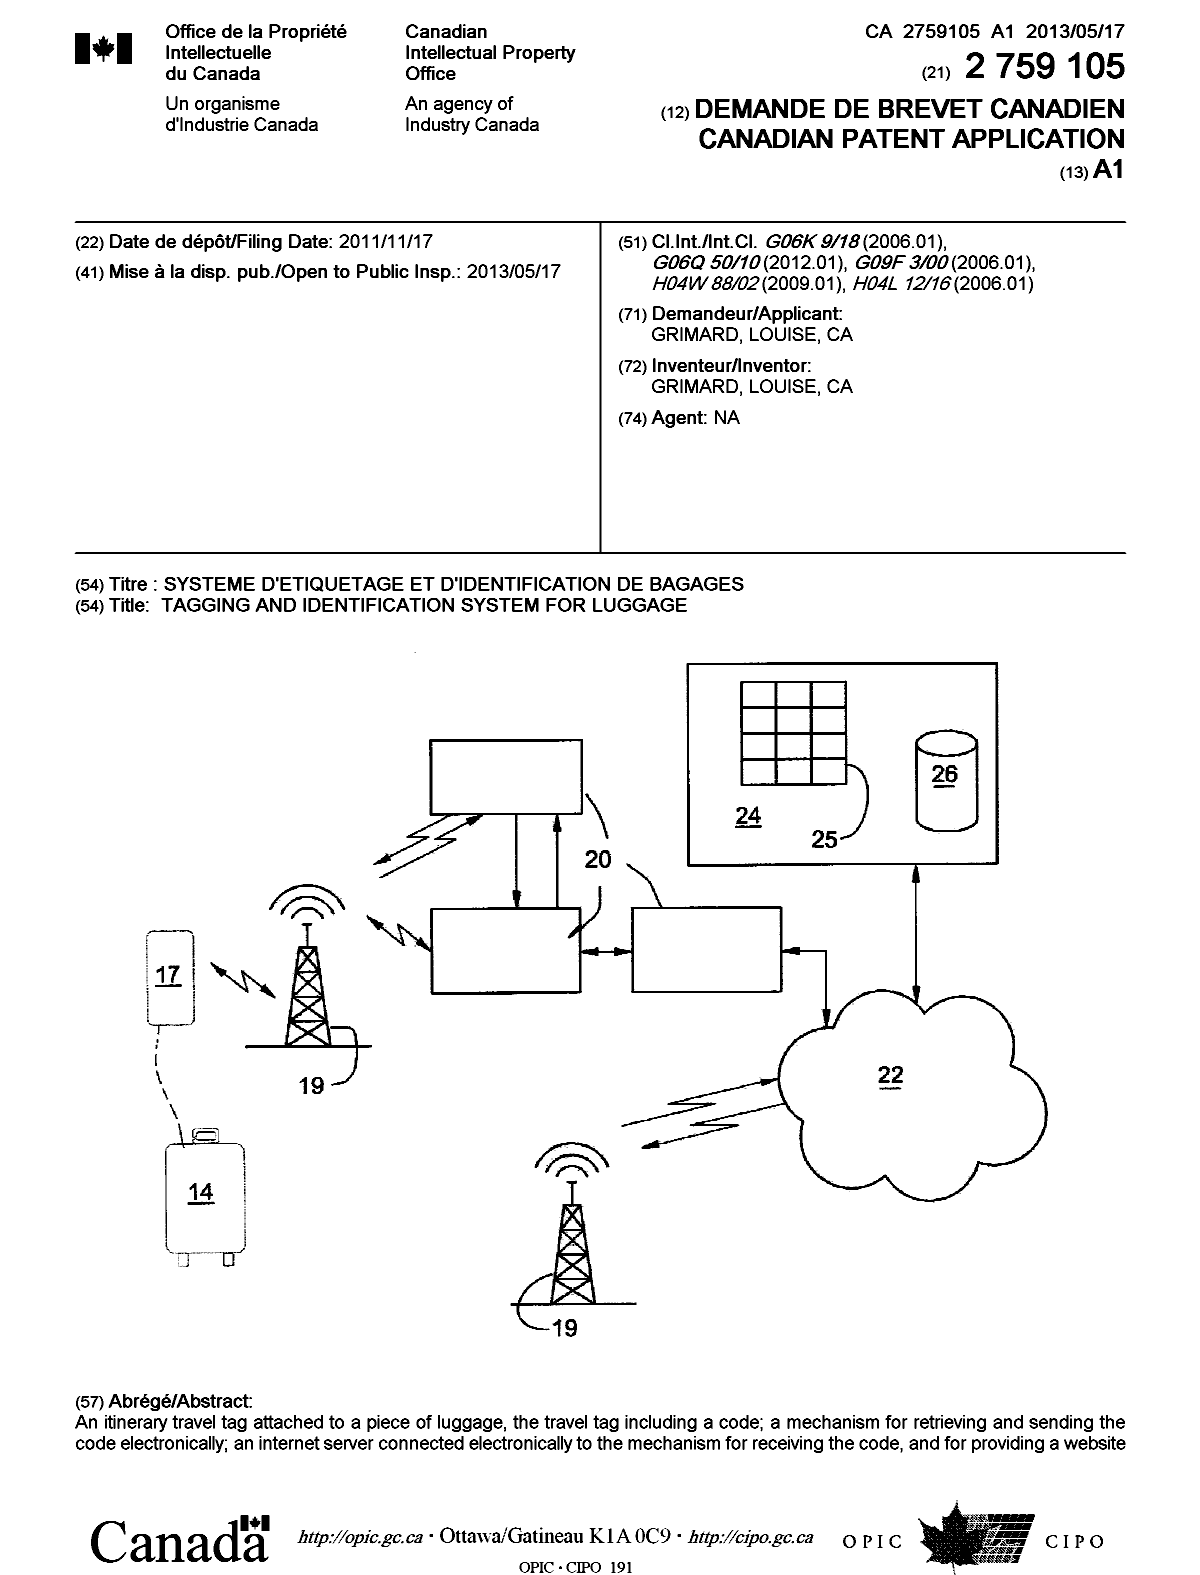 Document de brevet canadien 2759105. Page couverture 20121215. Image 1 de 2